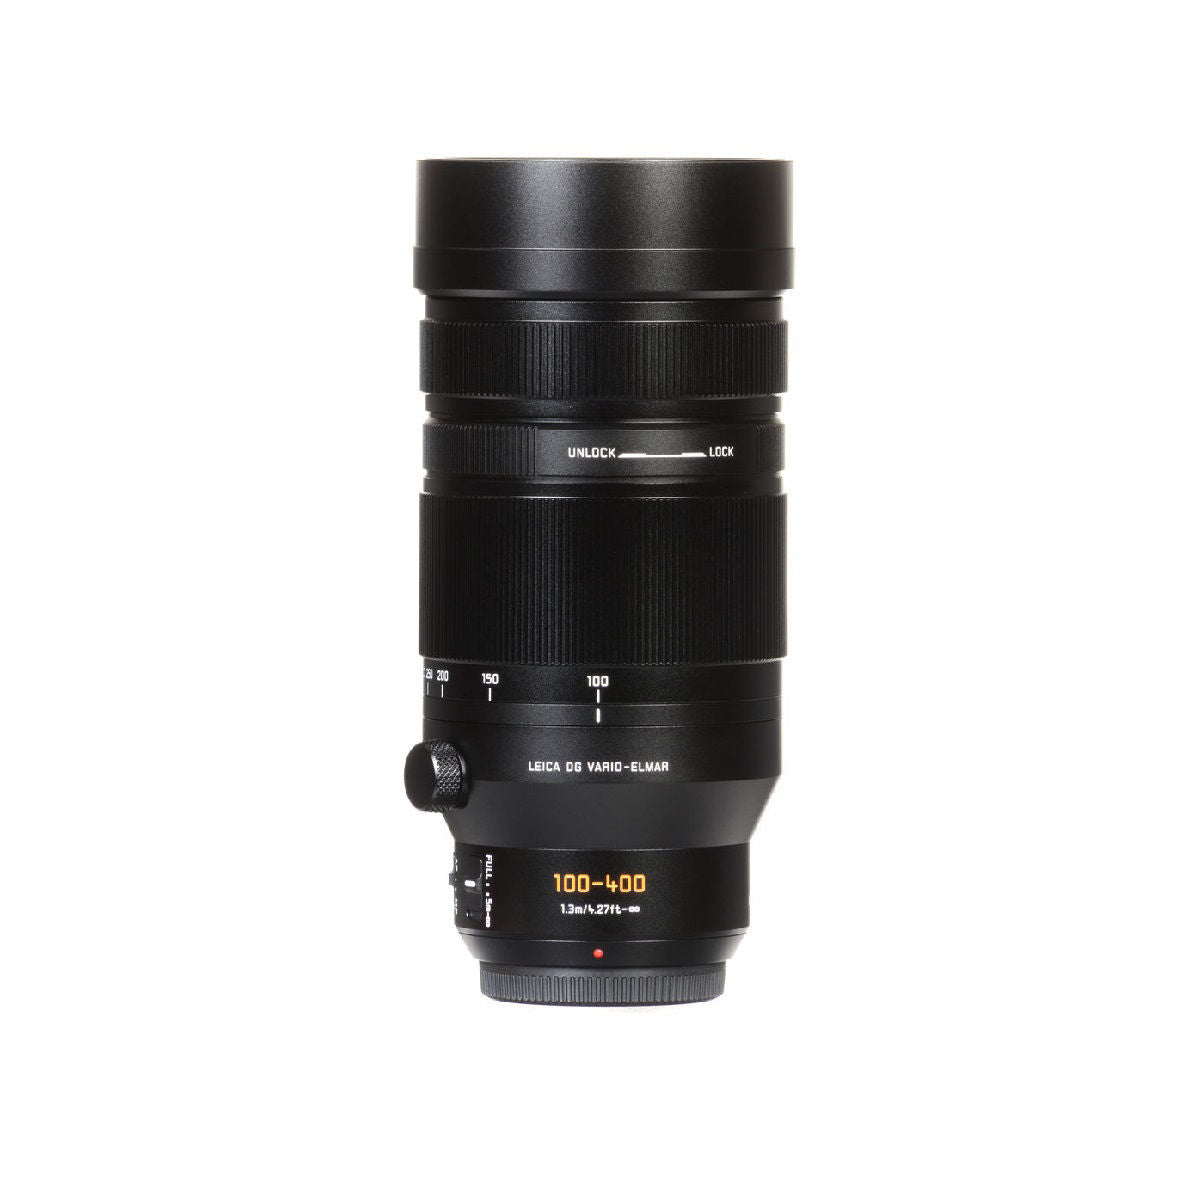 Panasonic Leica DG Vario-Elmar 100-400mm f/4-6.3 ASPH. Power O.I.S. Lens